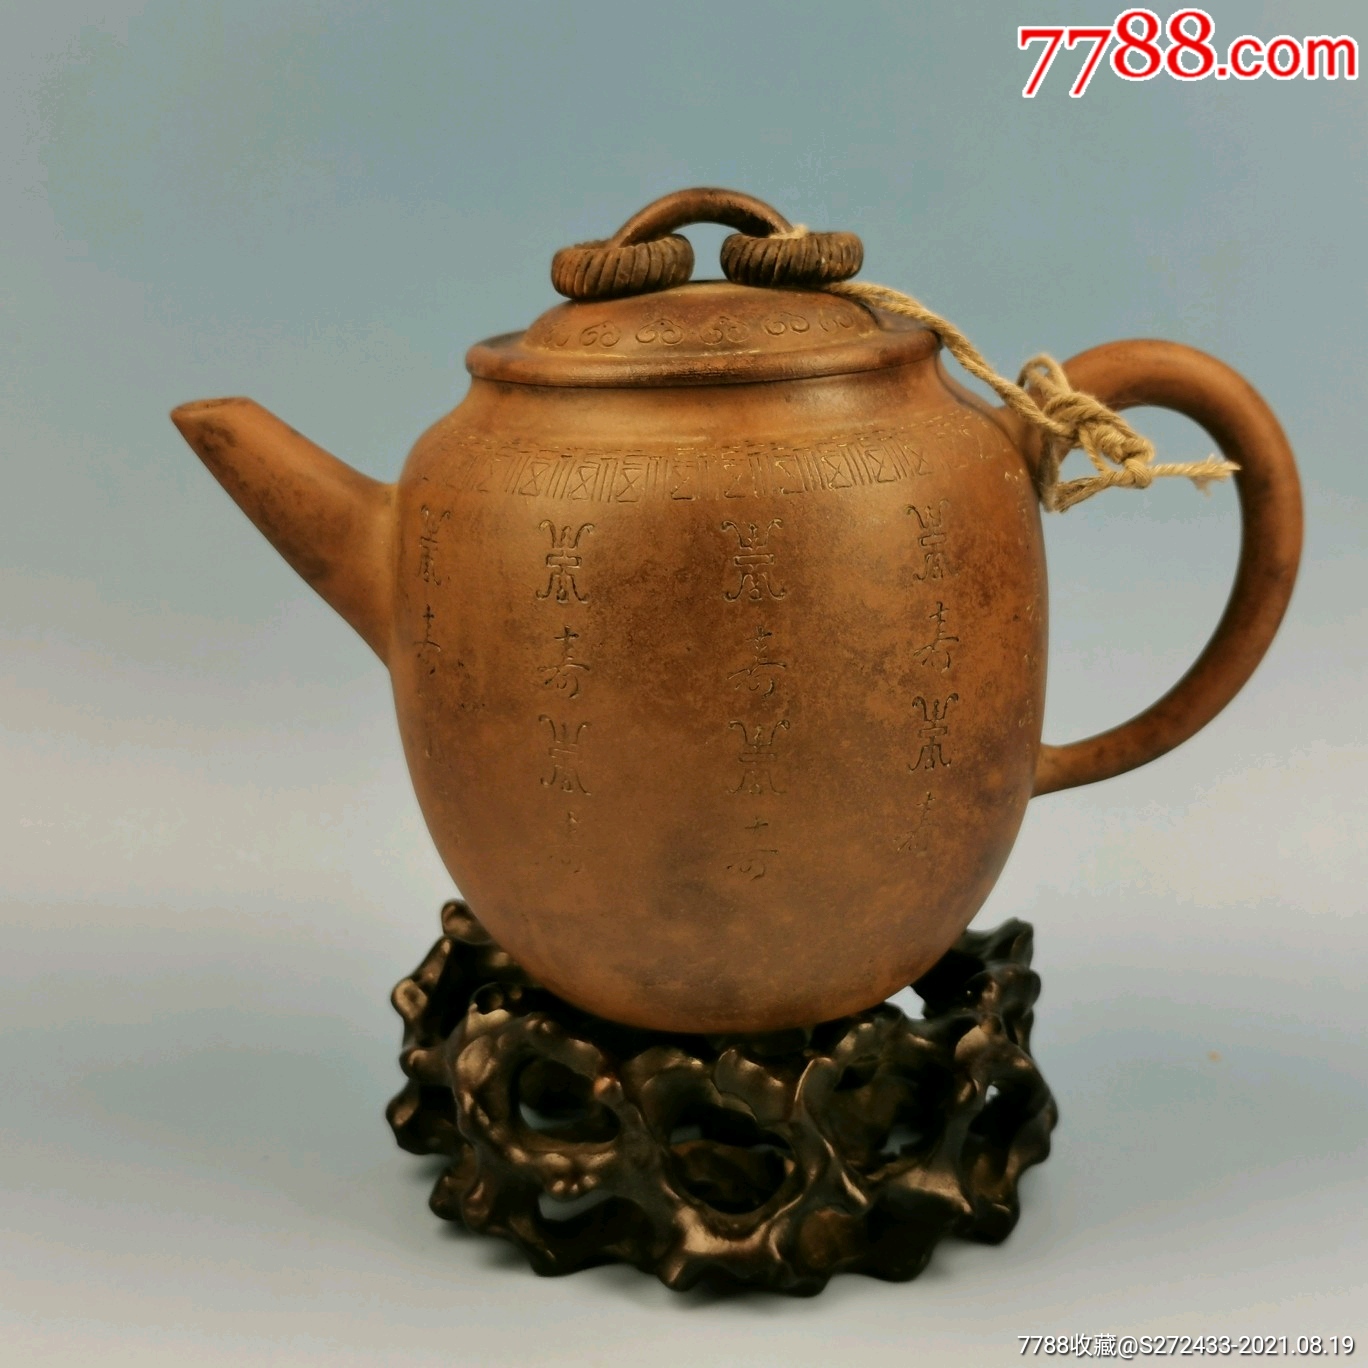 民间遗留的名家锡山俞大师纯手工制作百寿老紫砂壶一把,保存完整,砂质